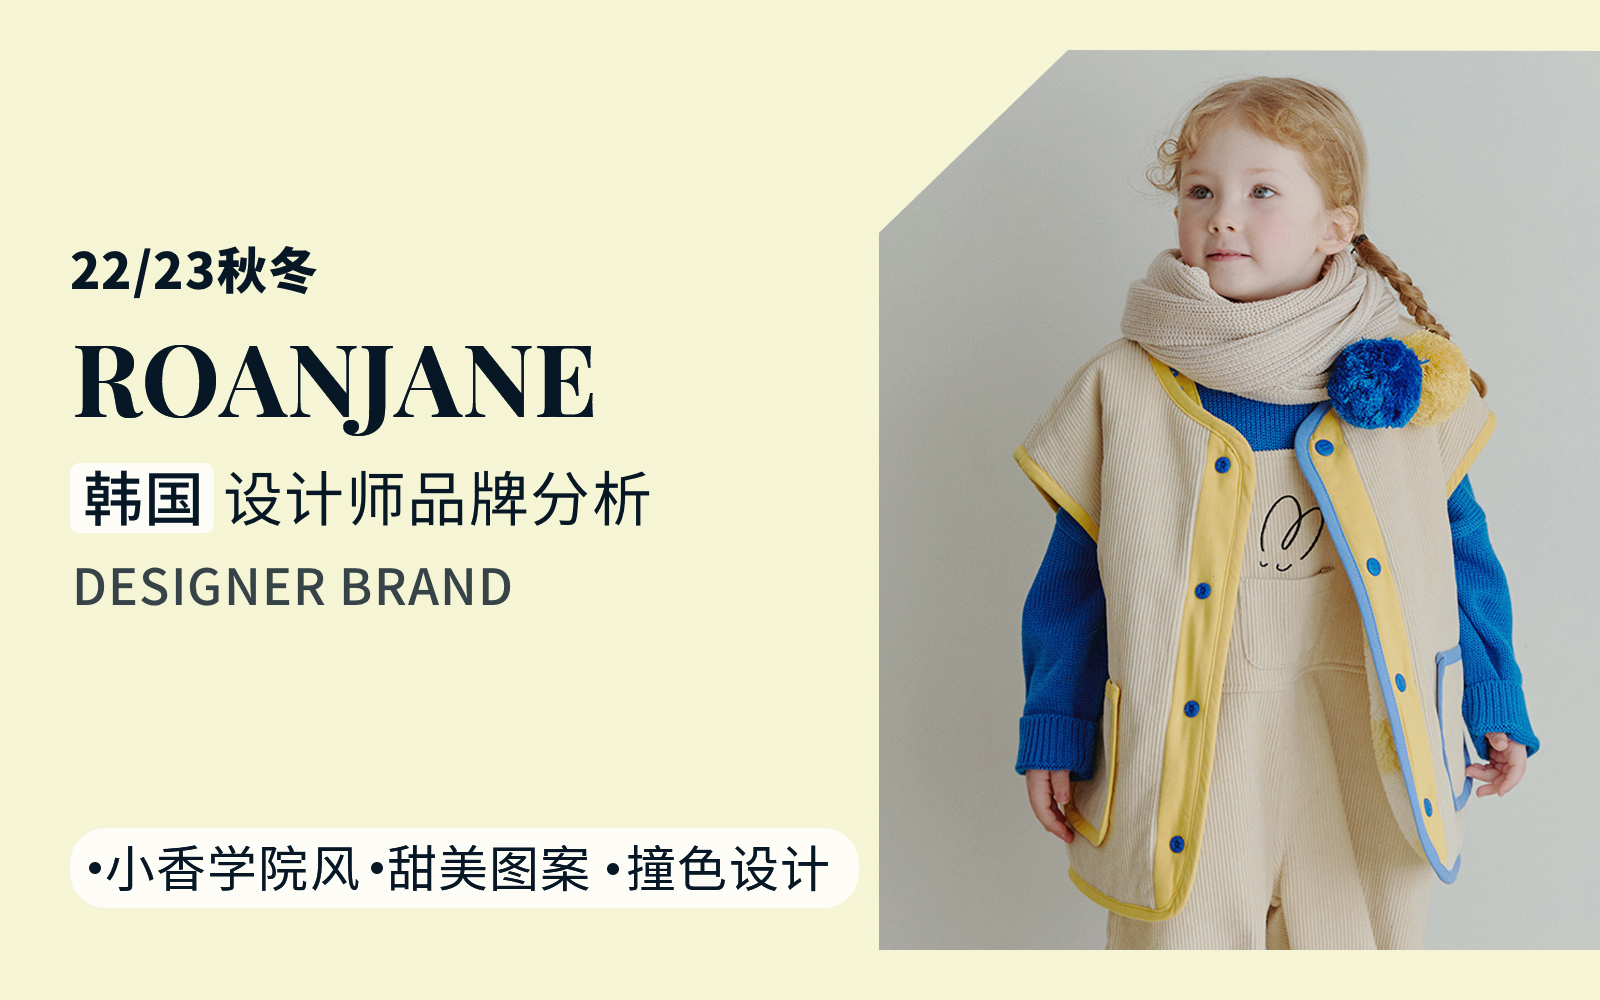 Fun Korean Fashion -- The Analysis of Roanjane The Kidswear Designer Brand